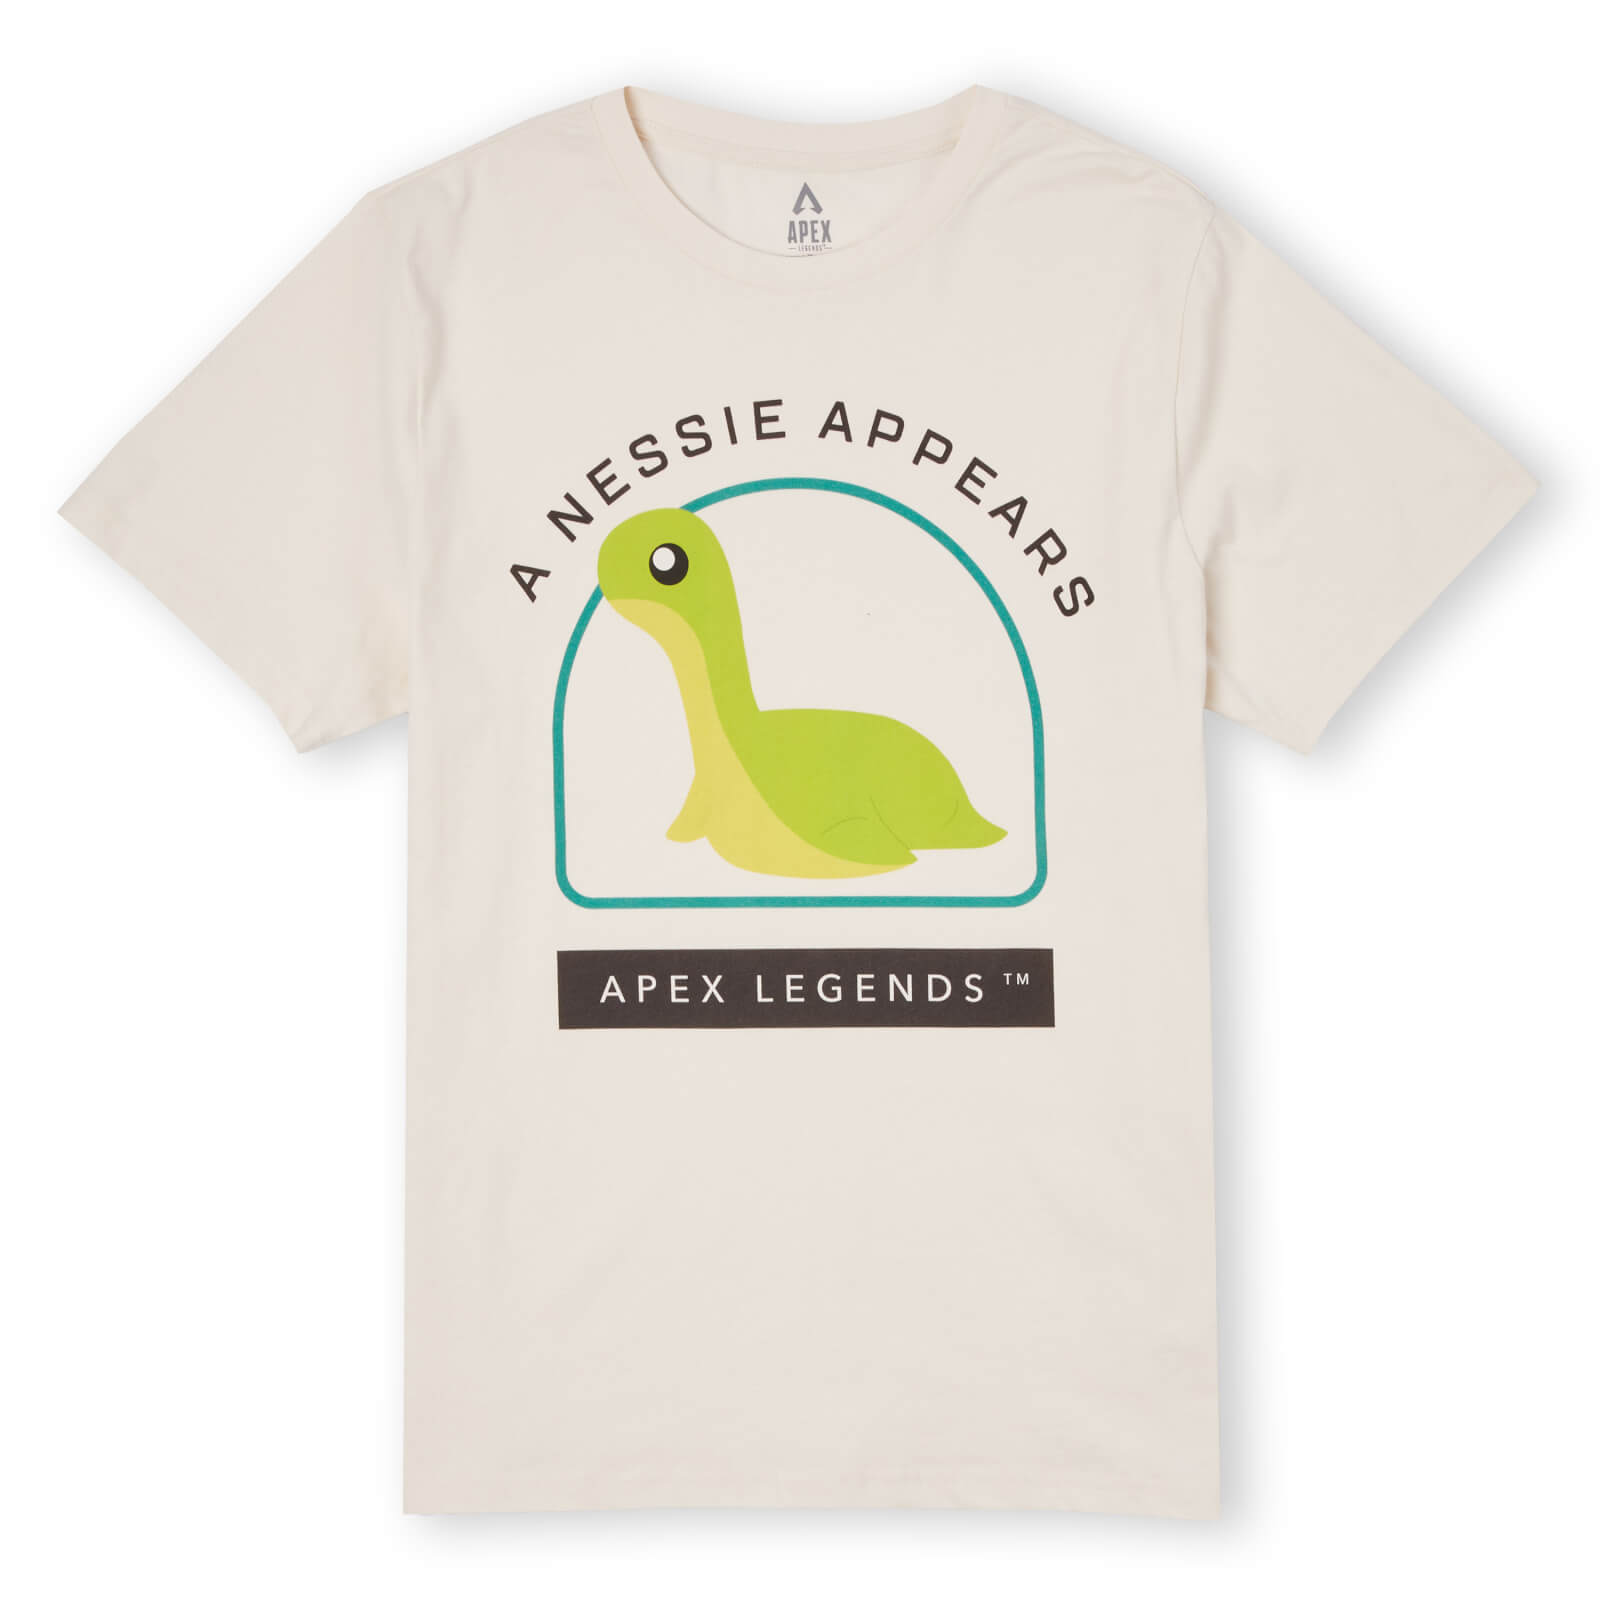 Apex Legends A Nessie Appears Unisex T-Shirt - Cream - S - Cream